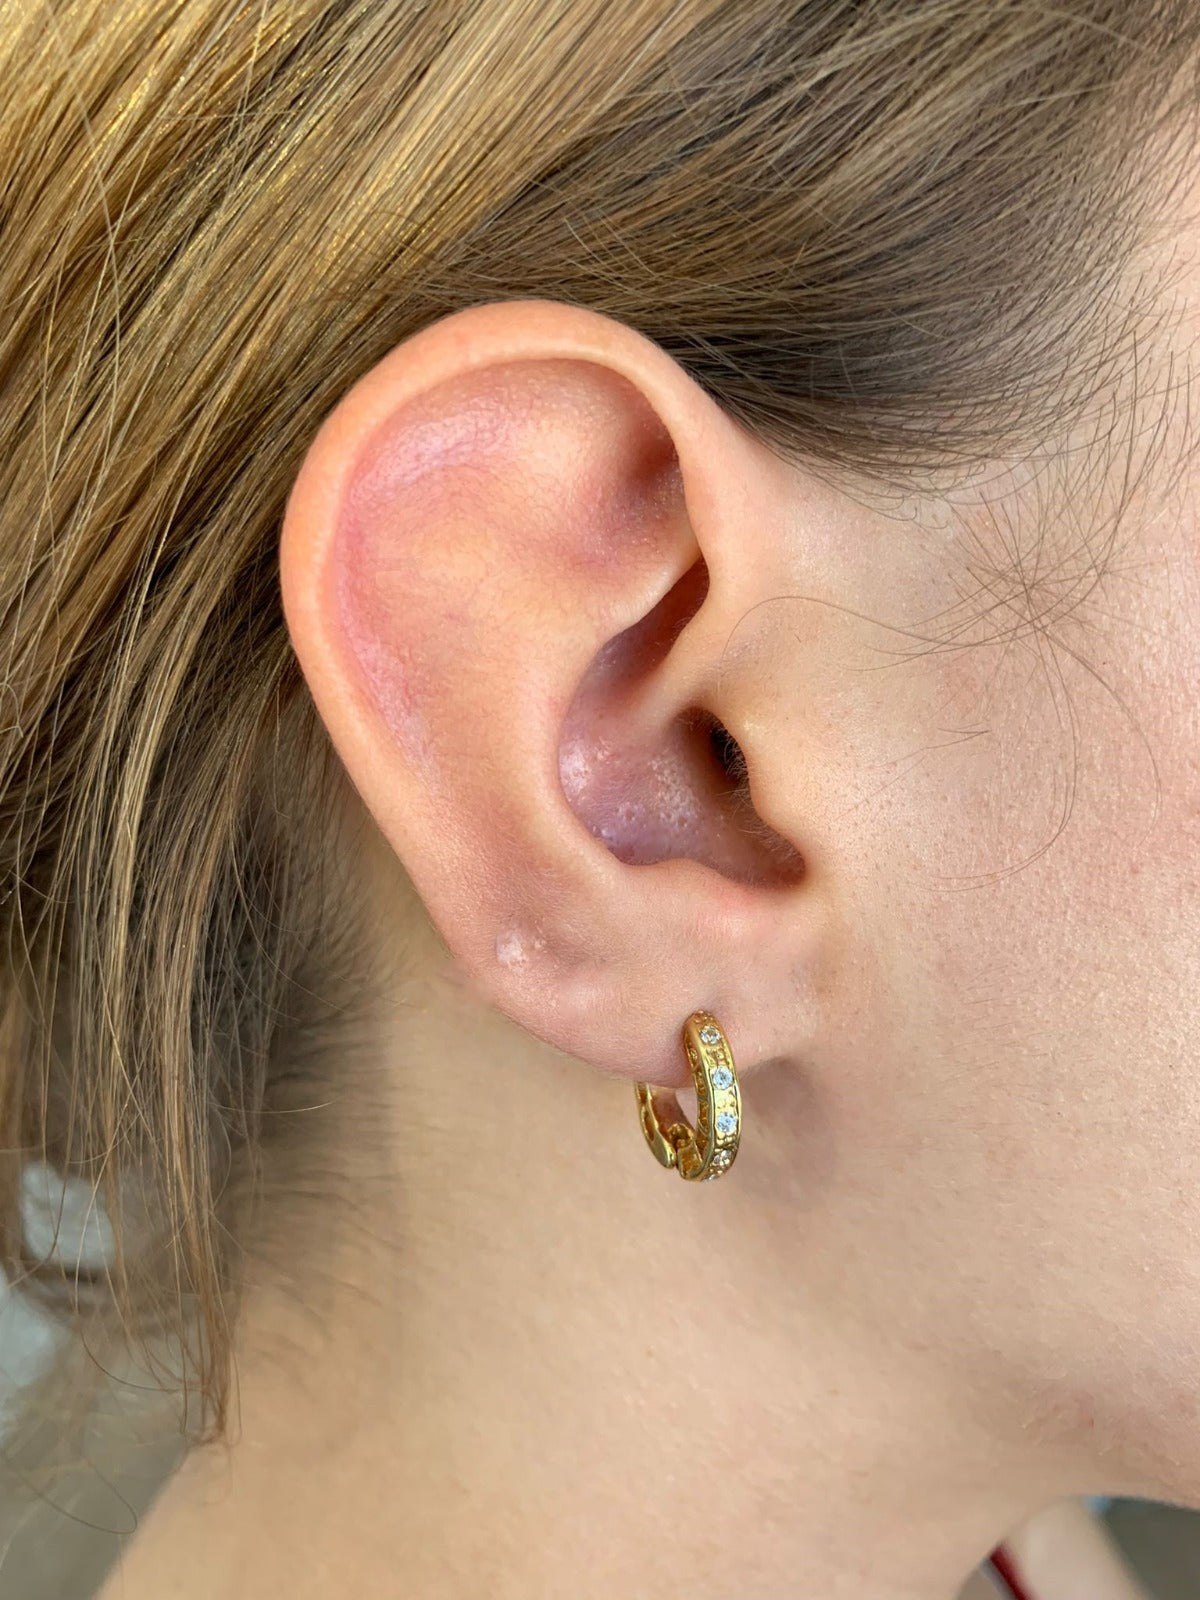 Berlin earring